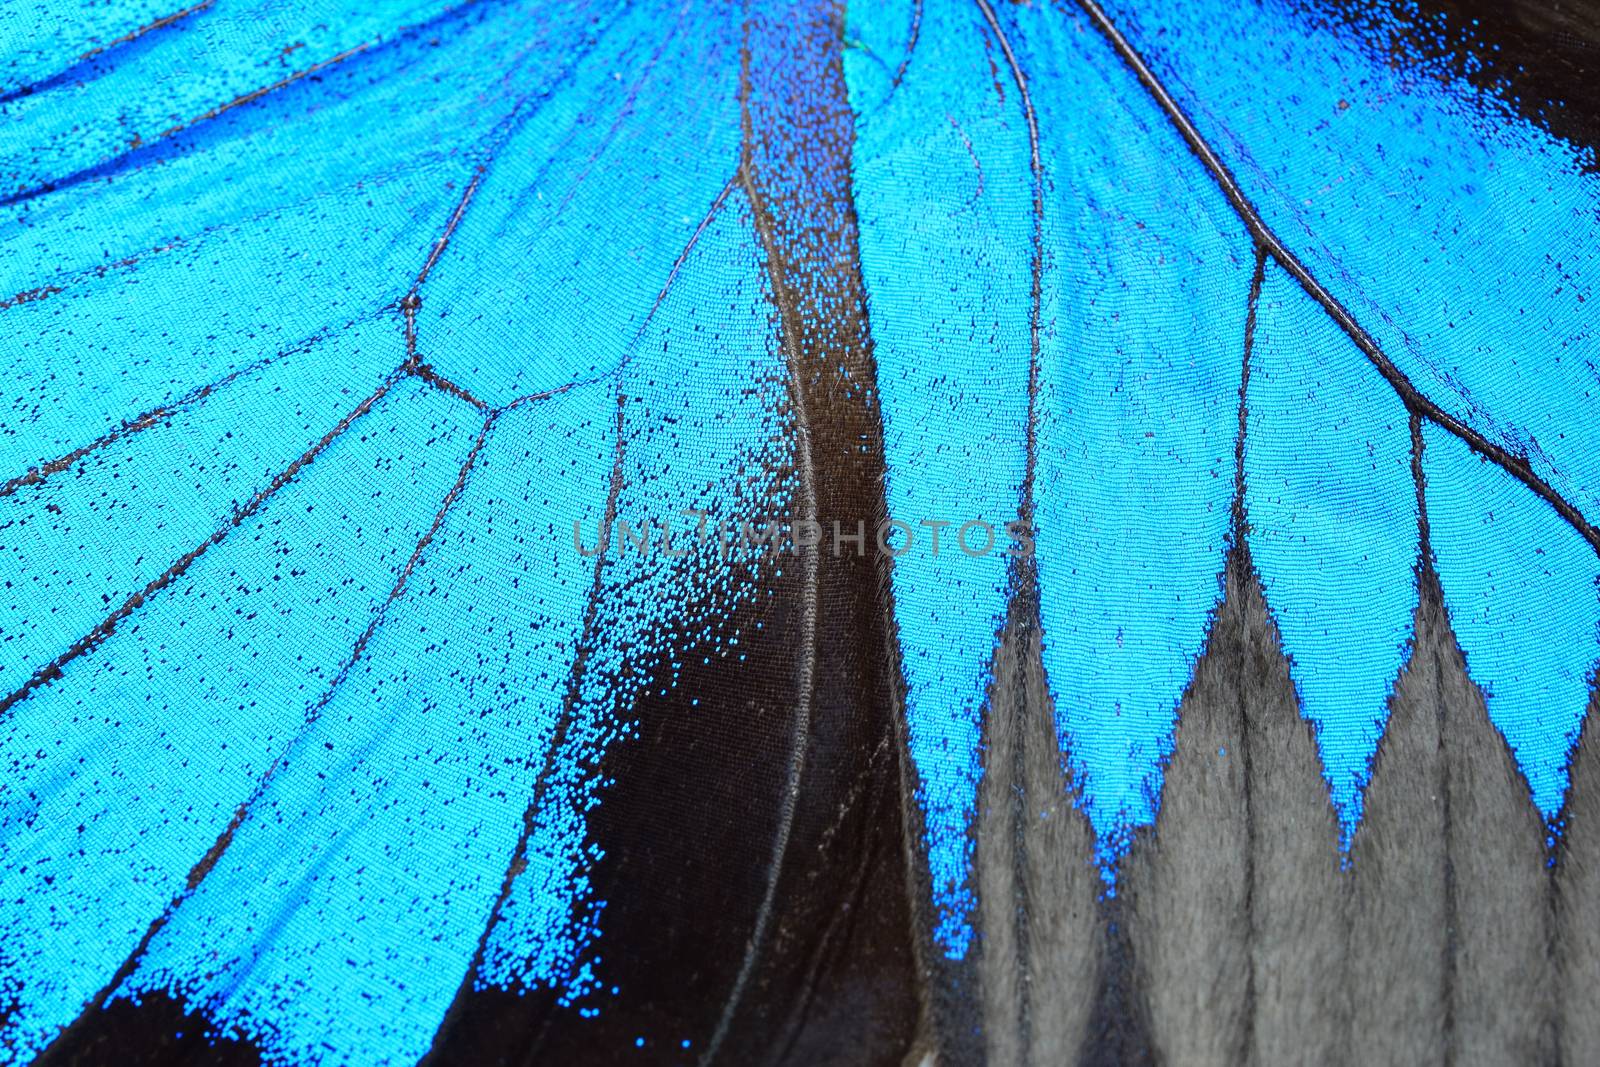 Blue butterfly wing by panuruangjan